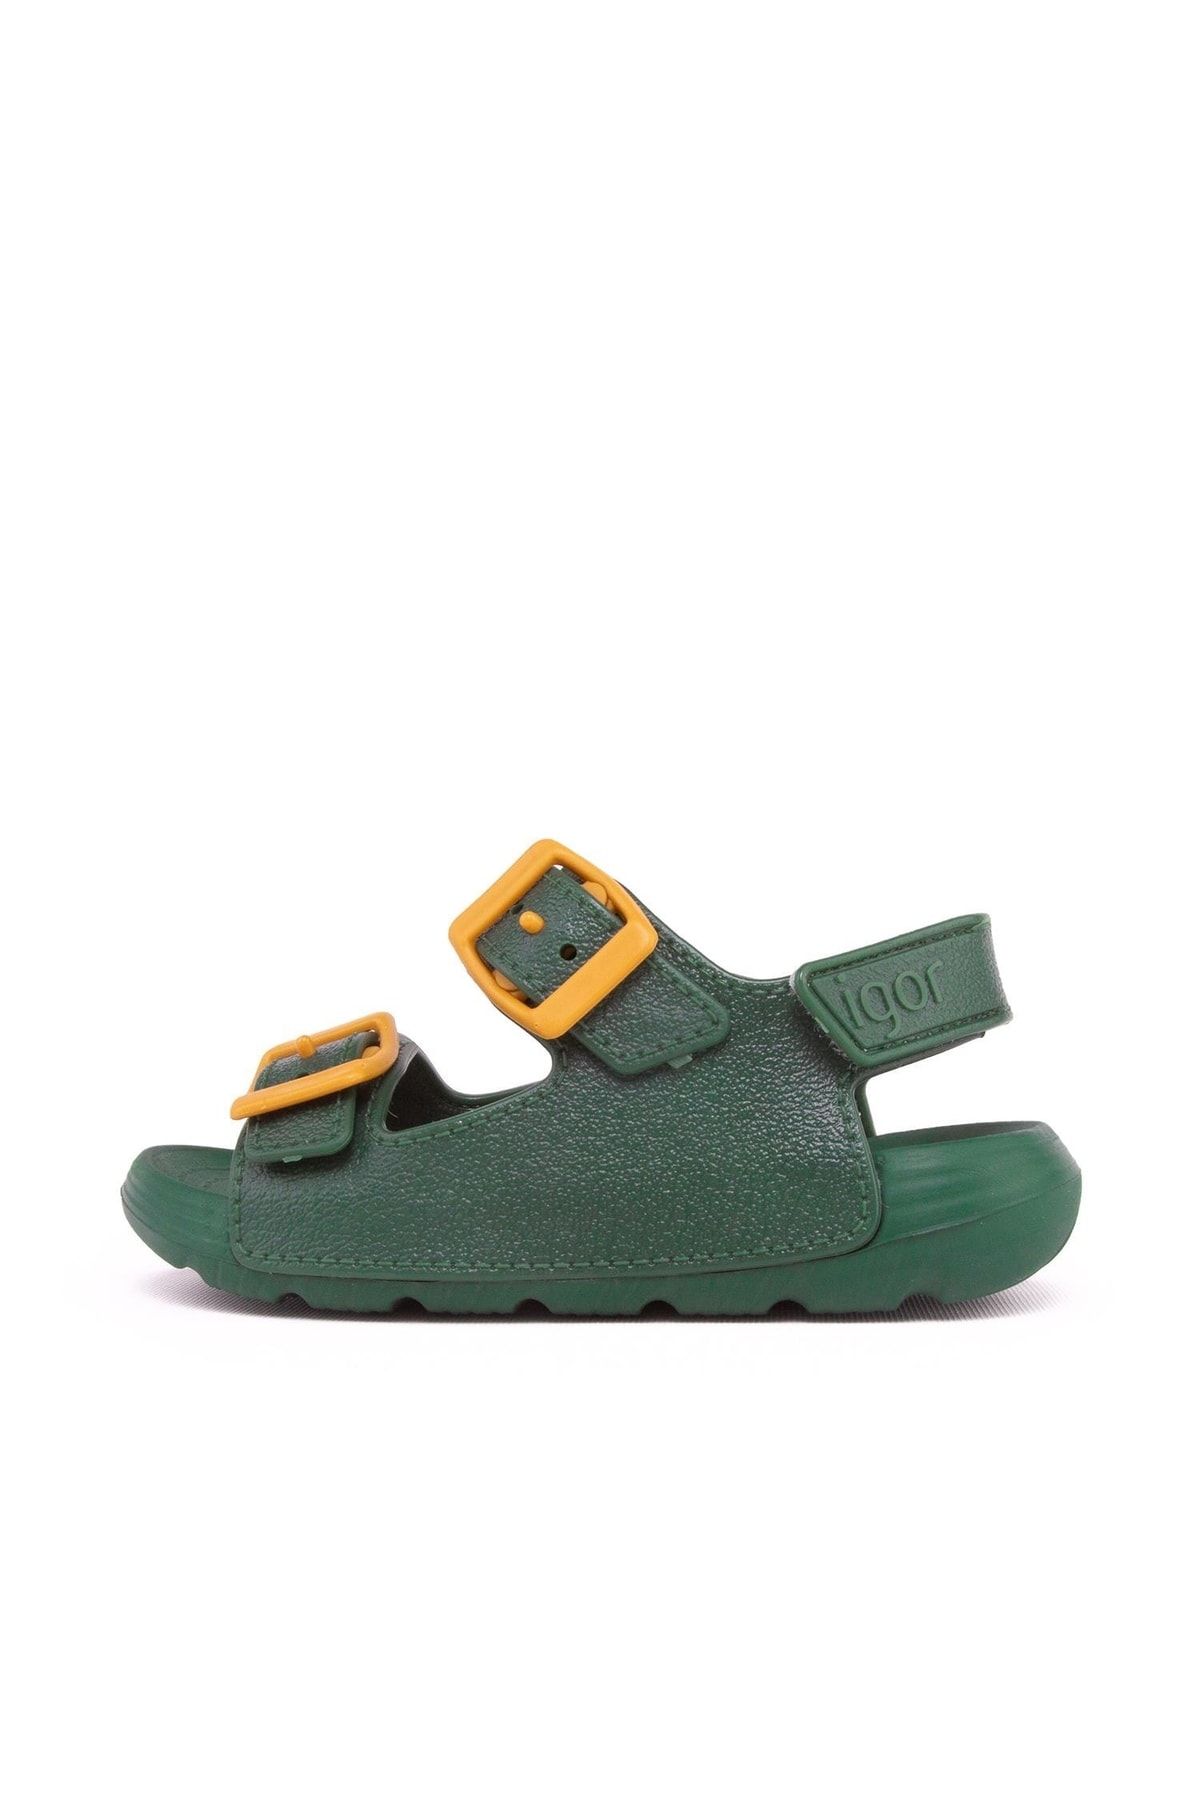 IGOR Maui S10299 Çocuk Çam Yeşili Sandalet